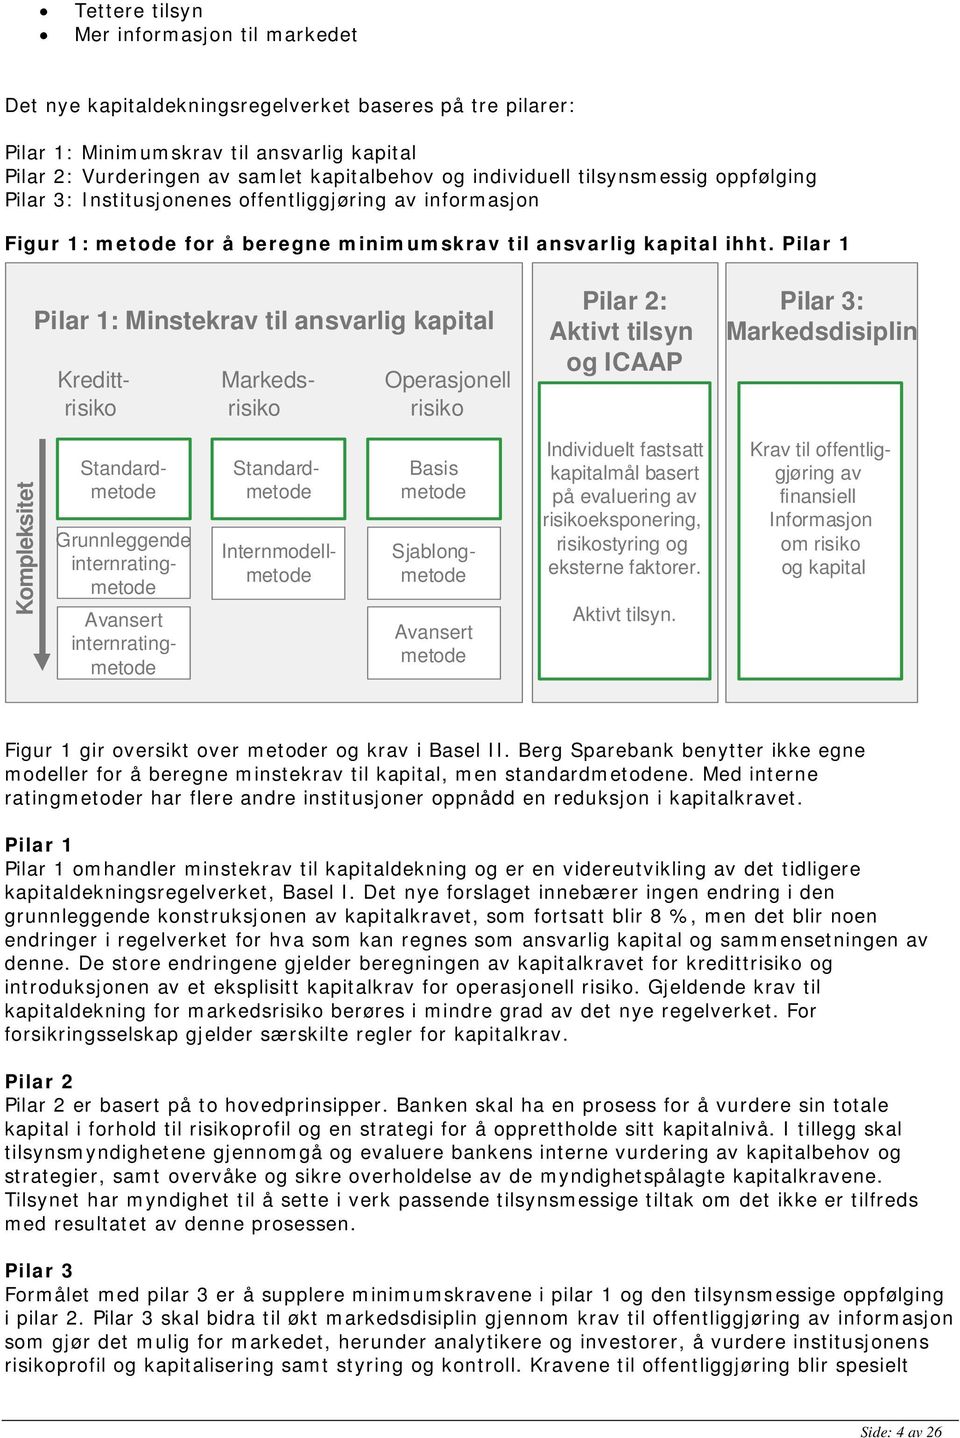 Pilar 1 Pilar 1: Minstekrav til ansvarlig kapital Kreditt- Markeds- Operasjonell risiko risiko risiko Pilar 2: Aktivt tilsyn og ICAAP Pilar 3: Markedsdisiplin Kompleksitet Standardmetode